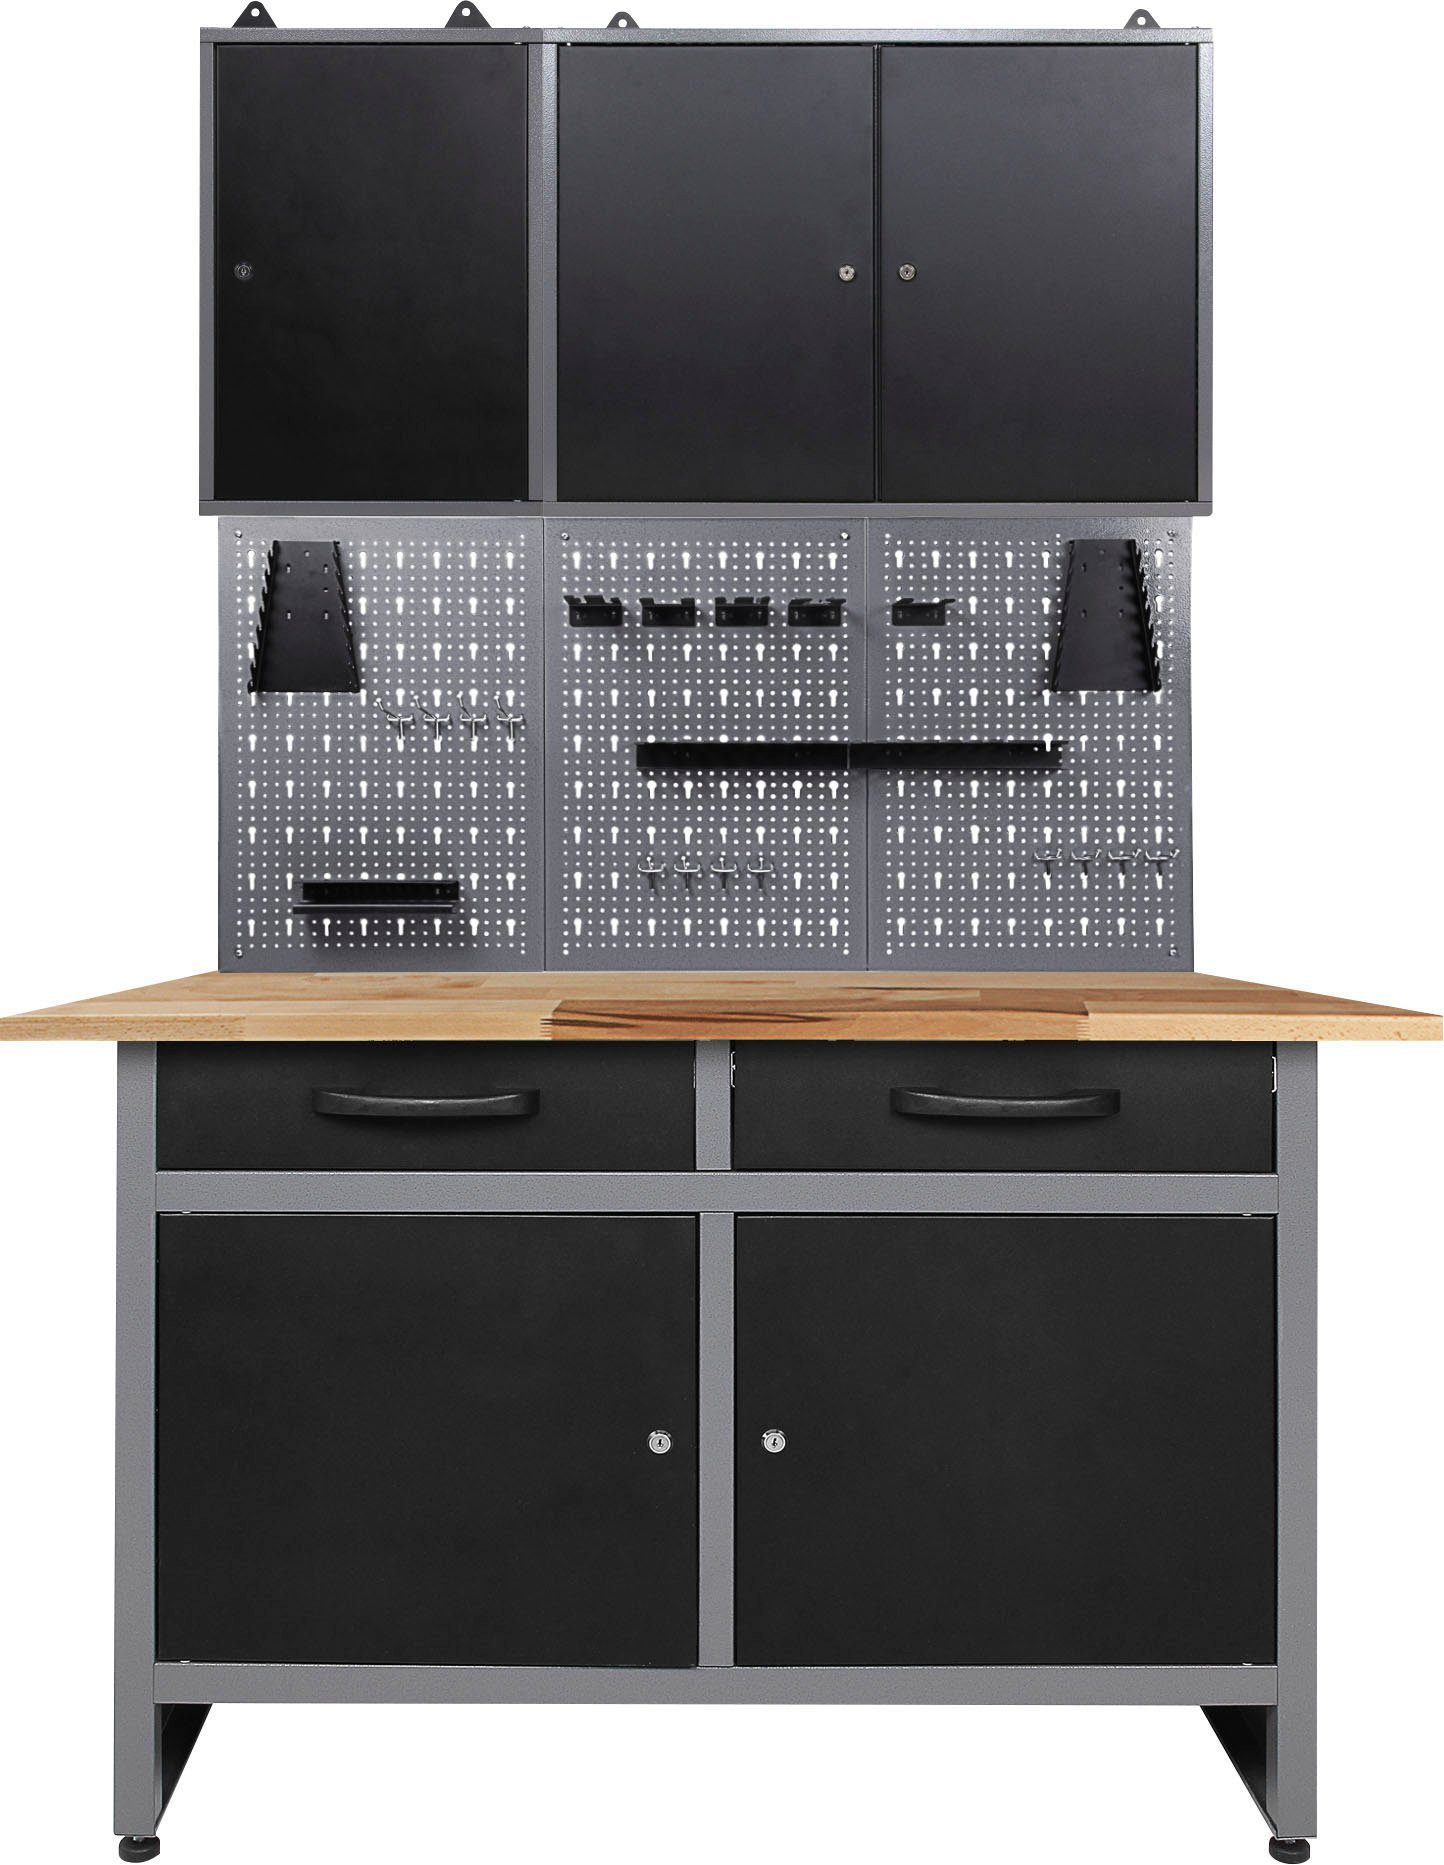 inkl. 120 cm, ONDIS24 Haken Lochwandsystem mit Werkstatt-Set, anthrazit/schwarz/grau